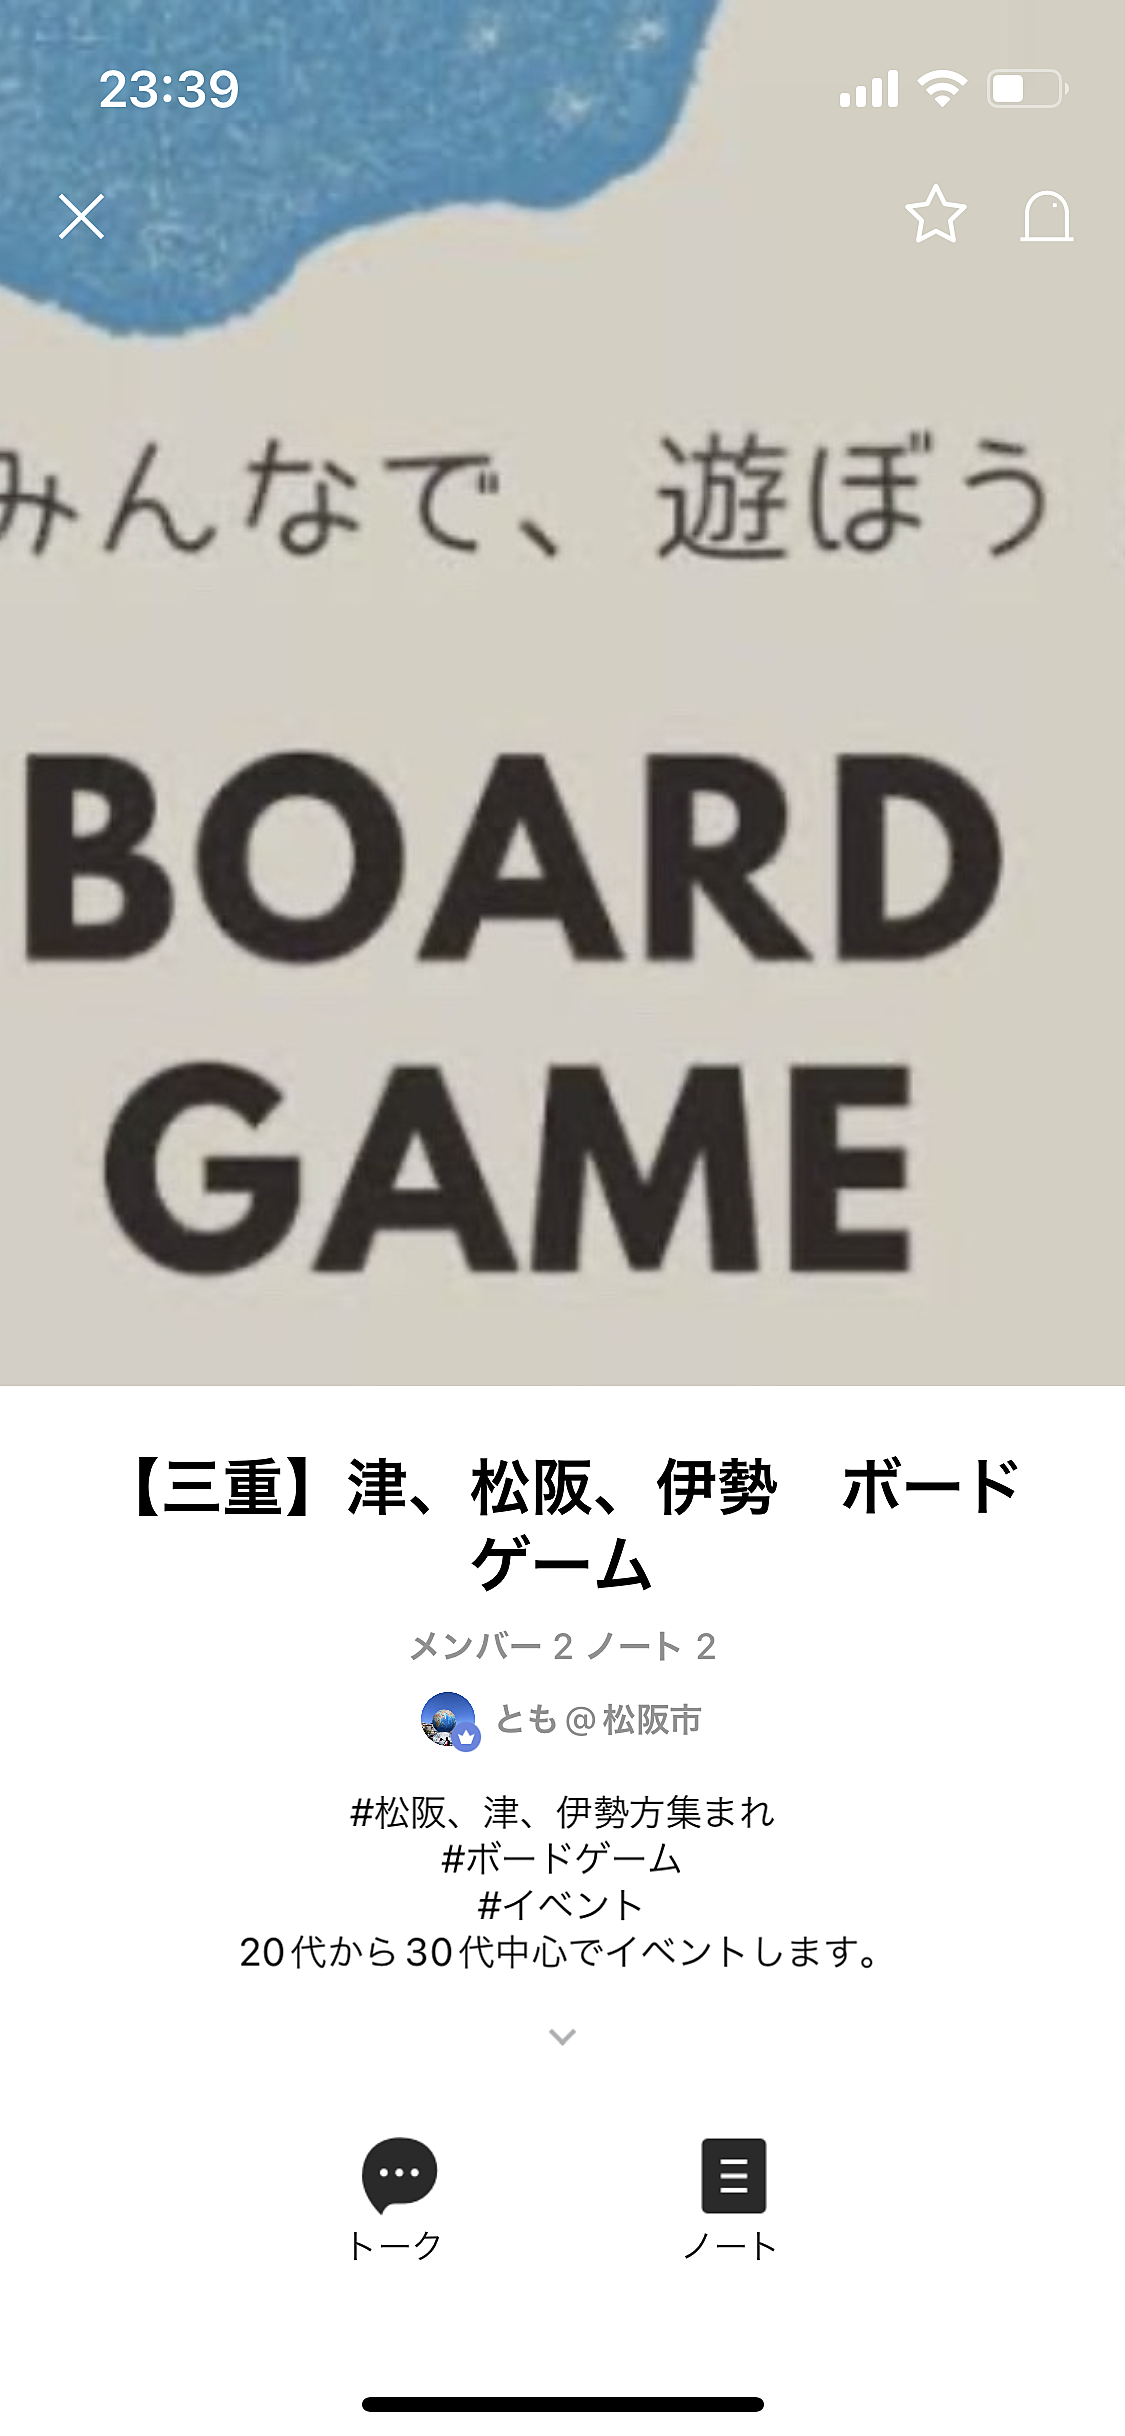 三重県ボードゲームオープンチャット募集